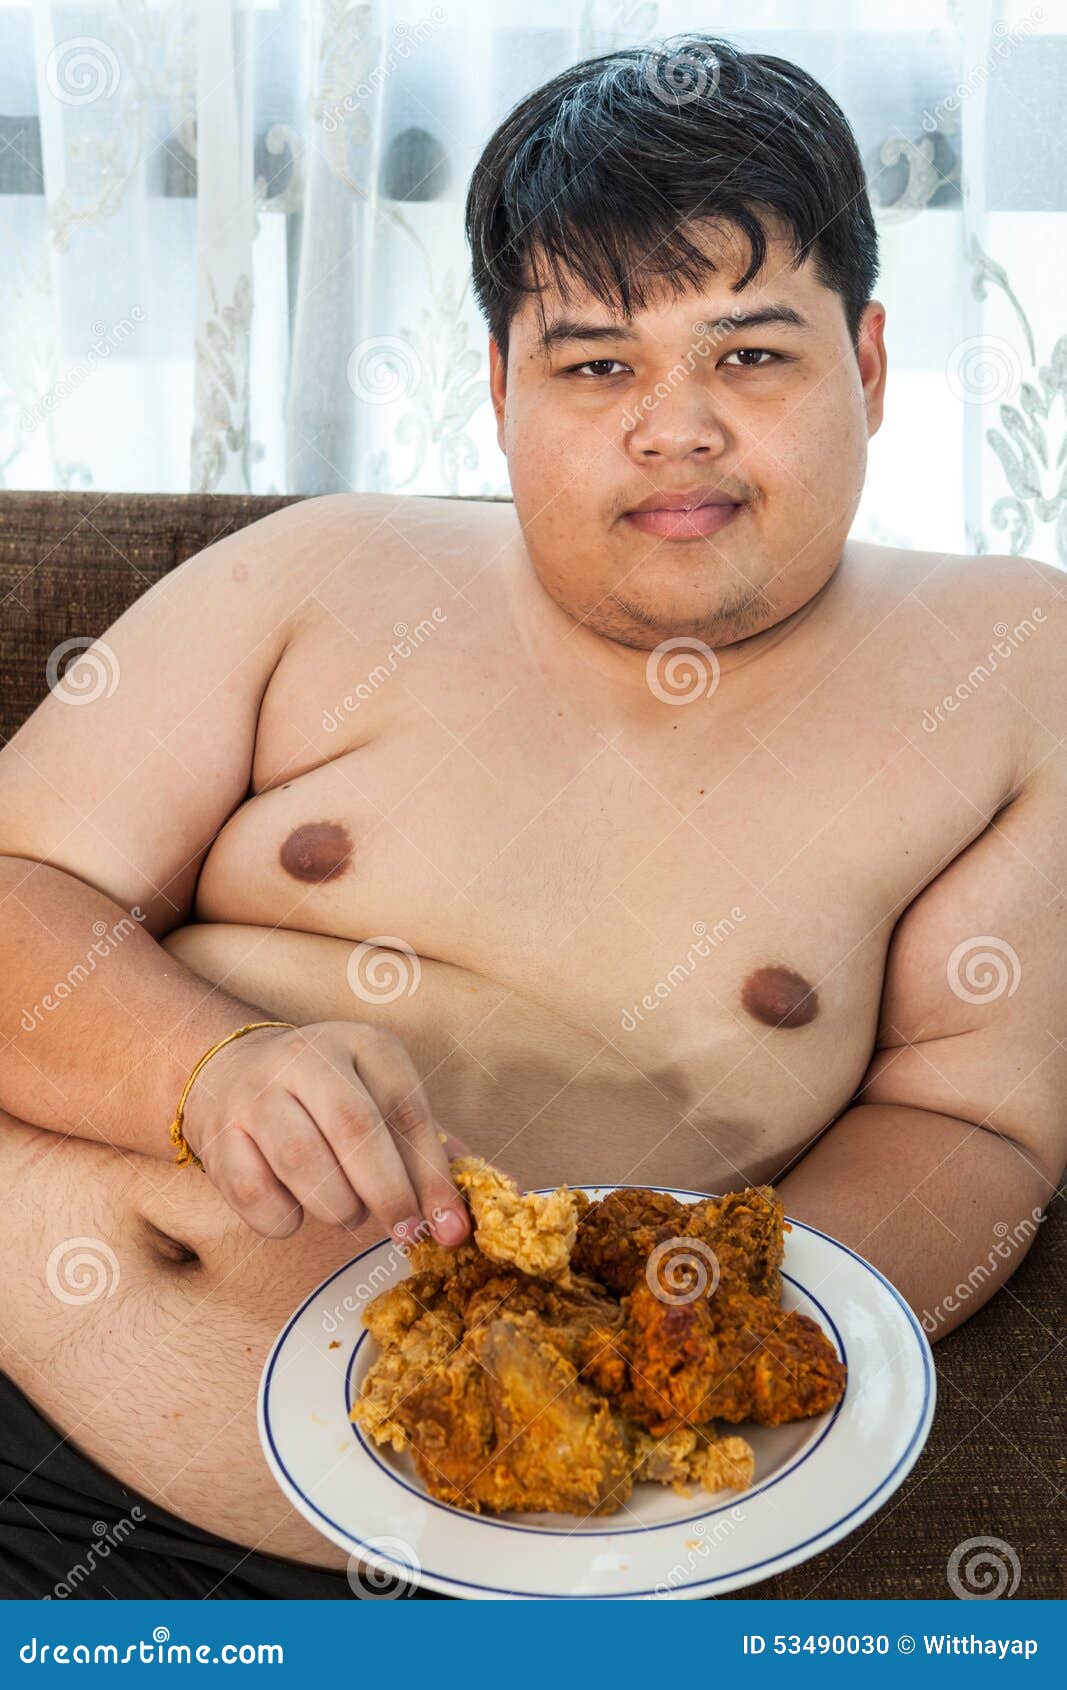 Free Porno Video Guy Fat Men 40